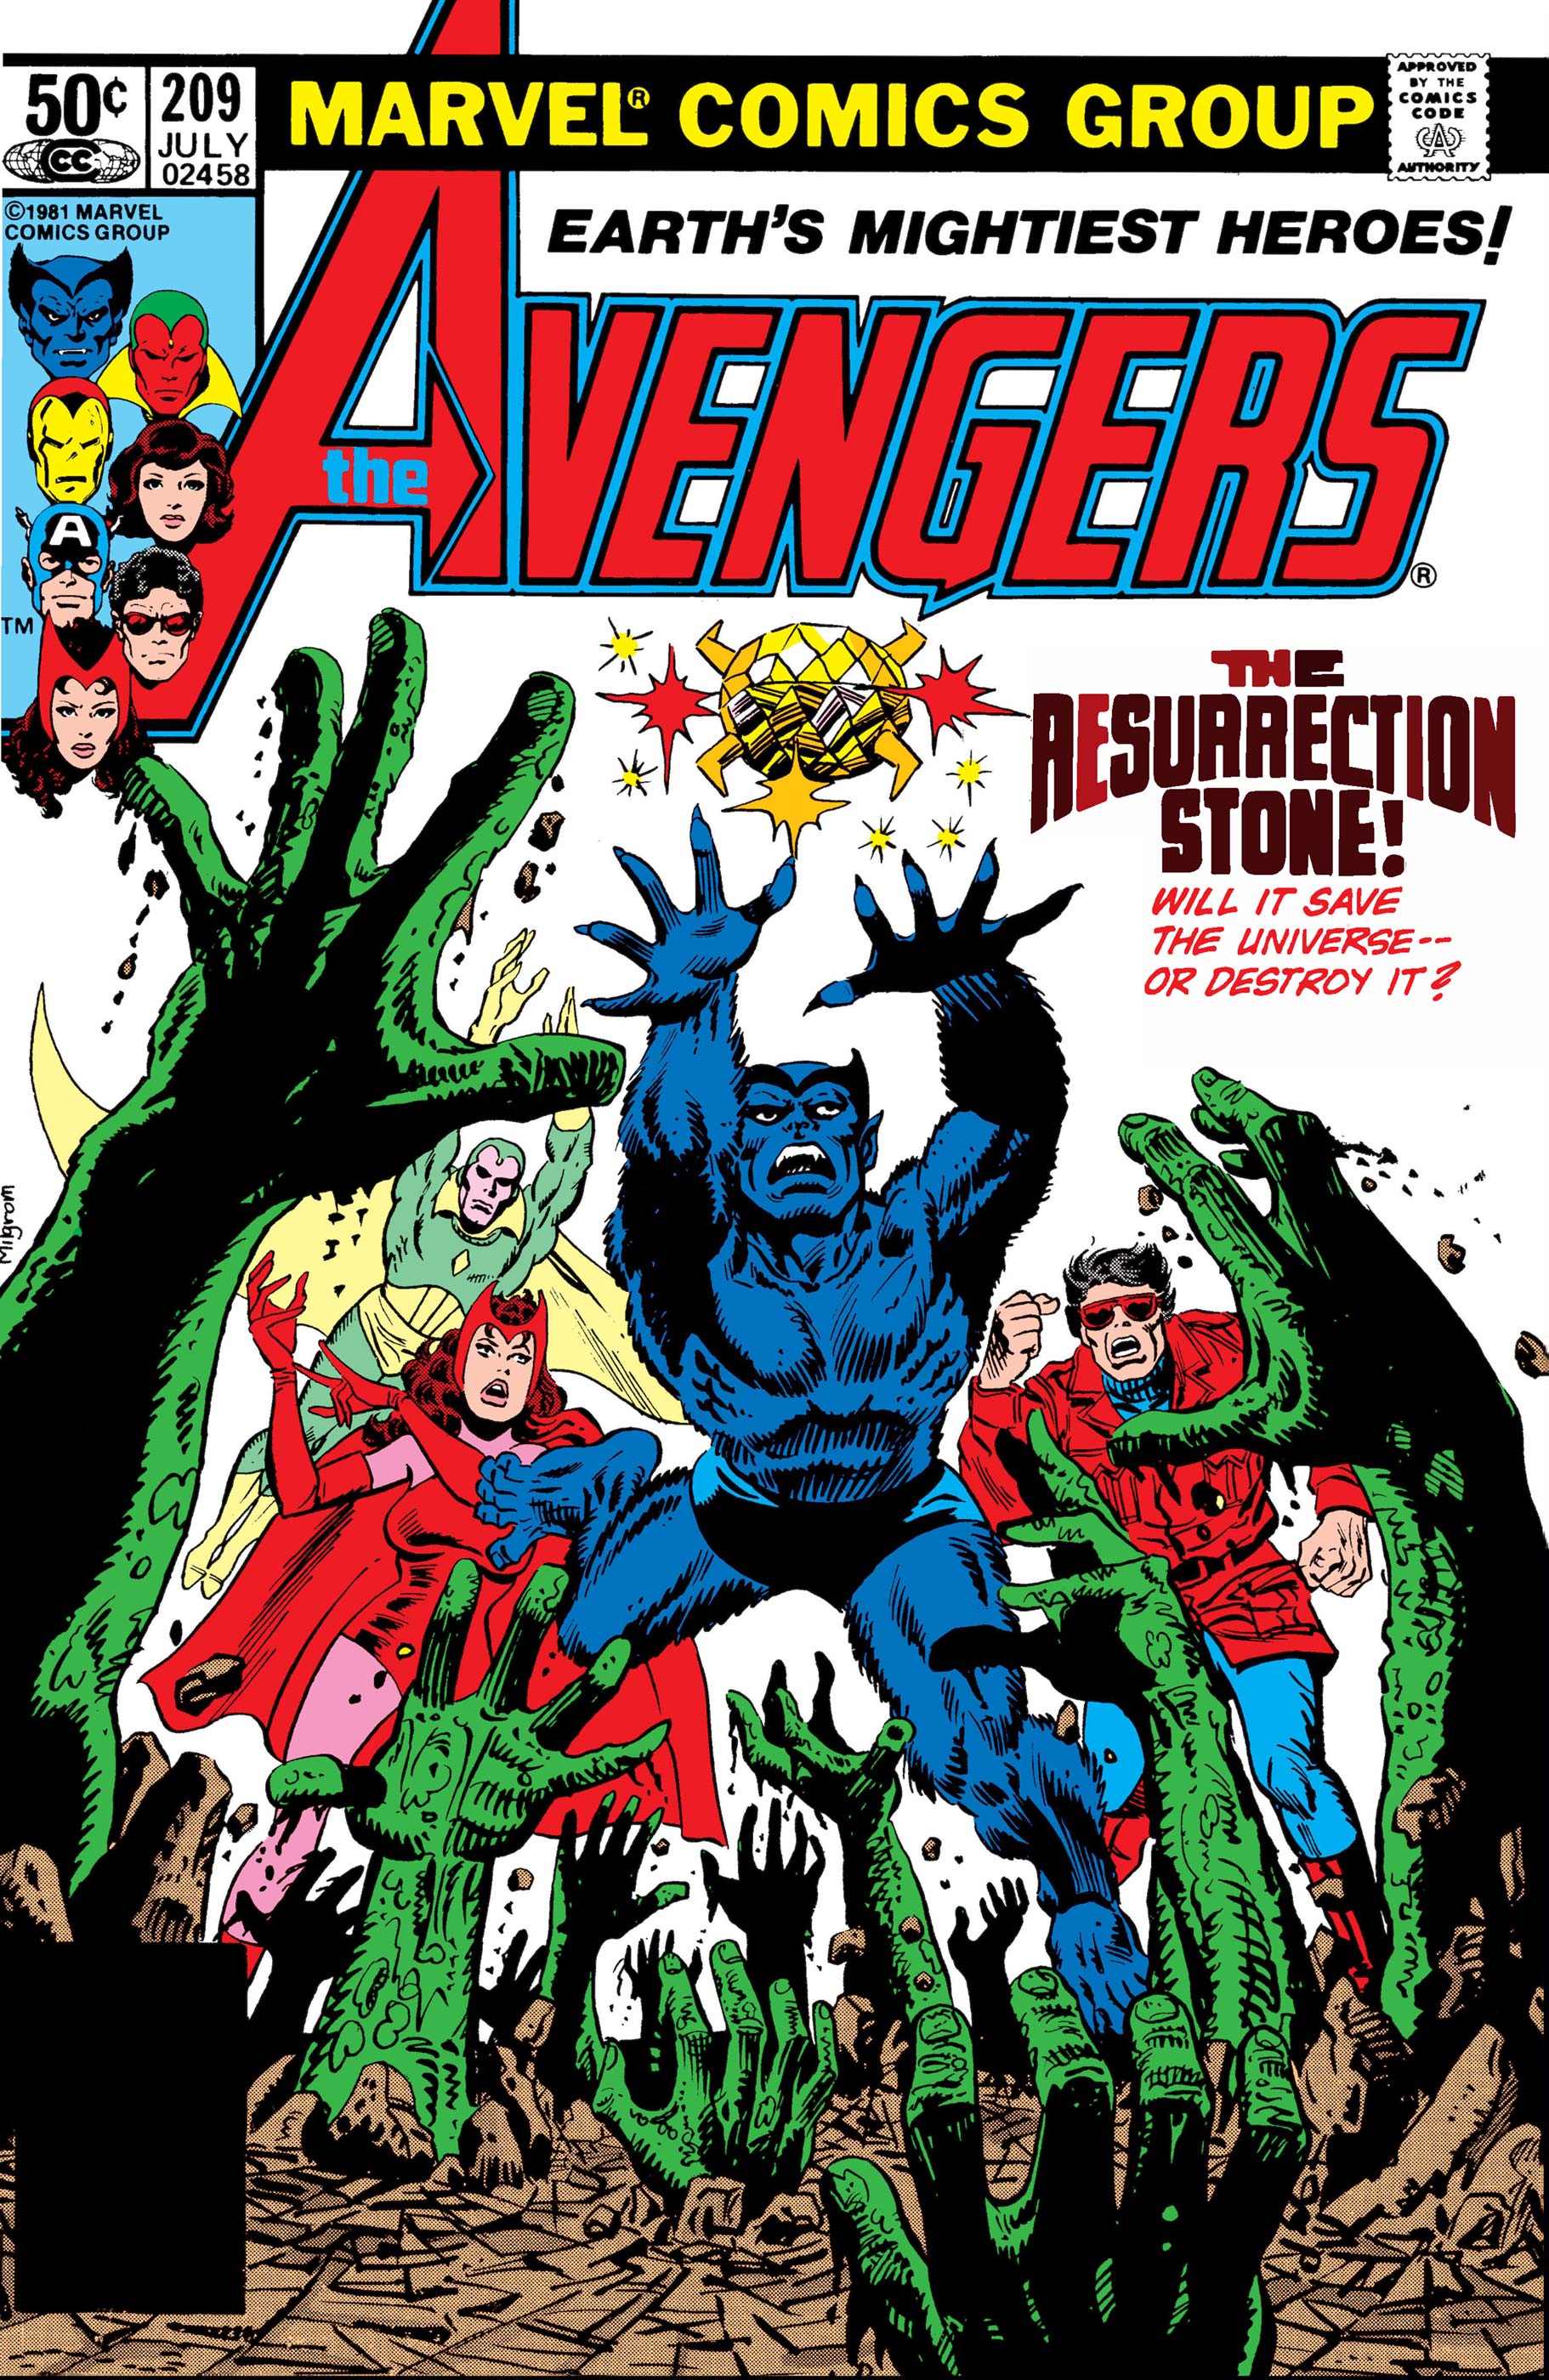 Avengers (1963) #209